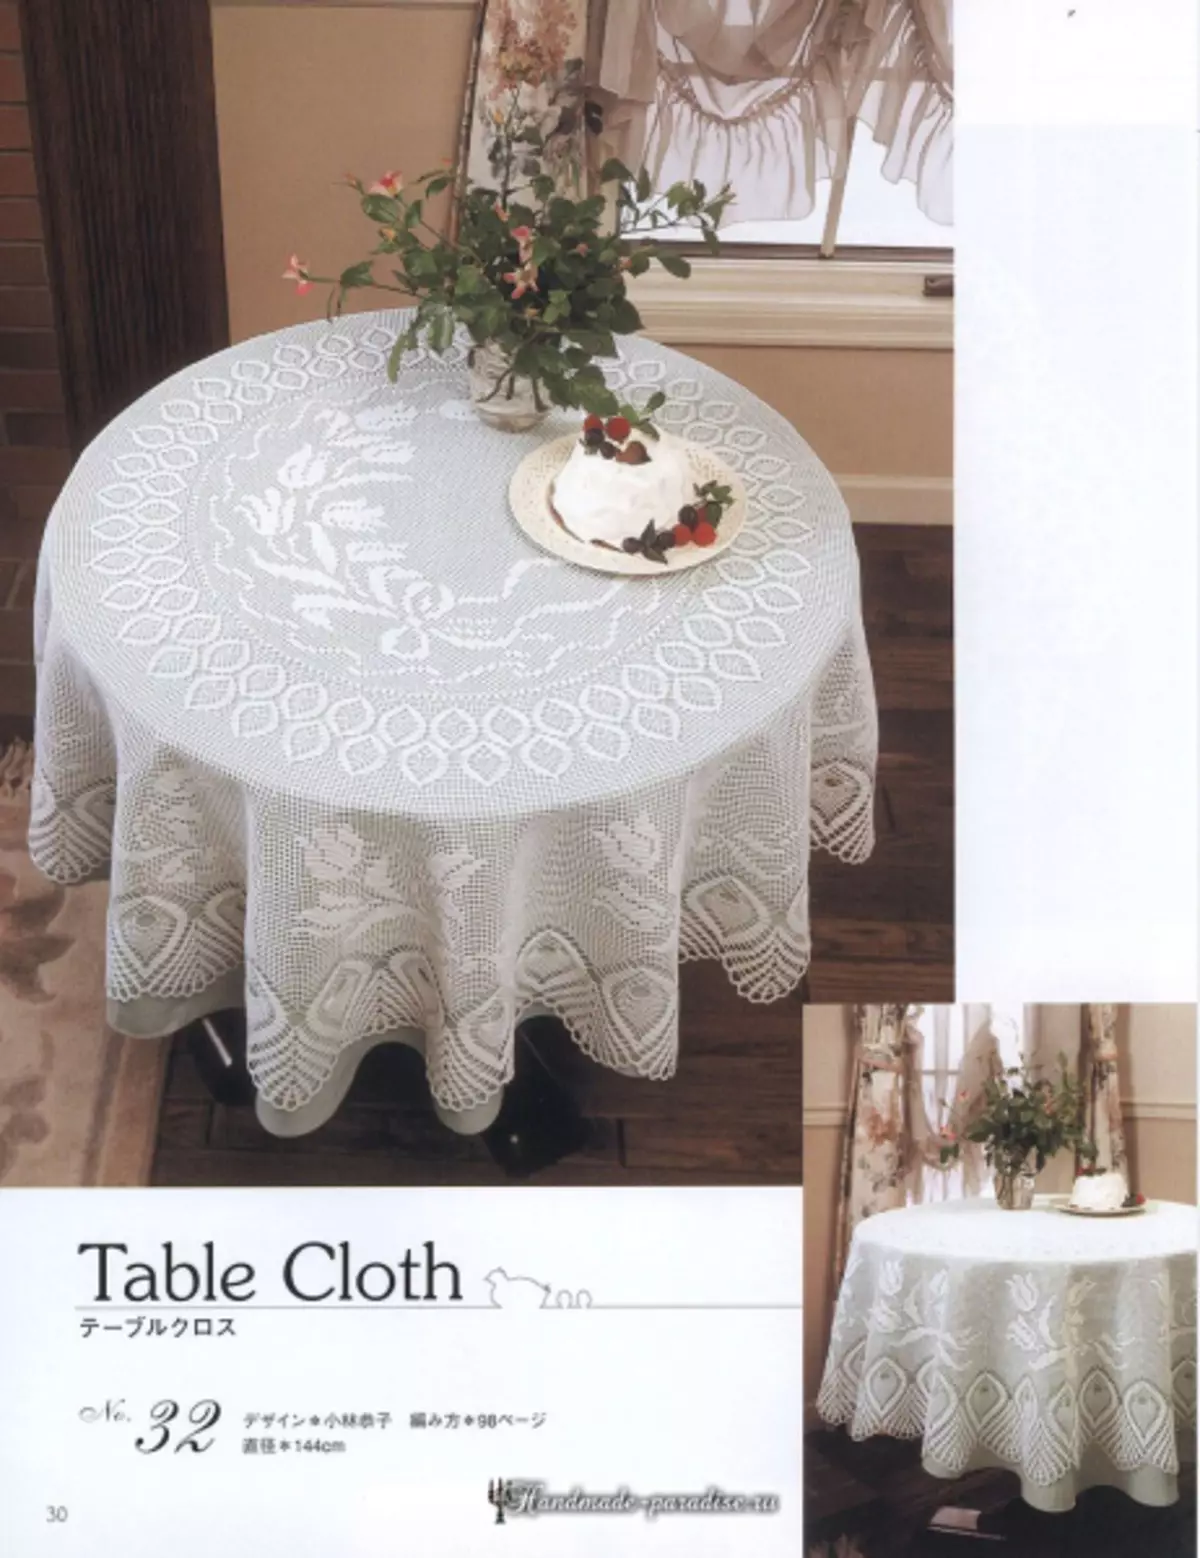 Kifahari cha Crochet Lace 2019 Magazine - napkins na meza ya crochet